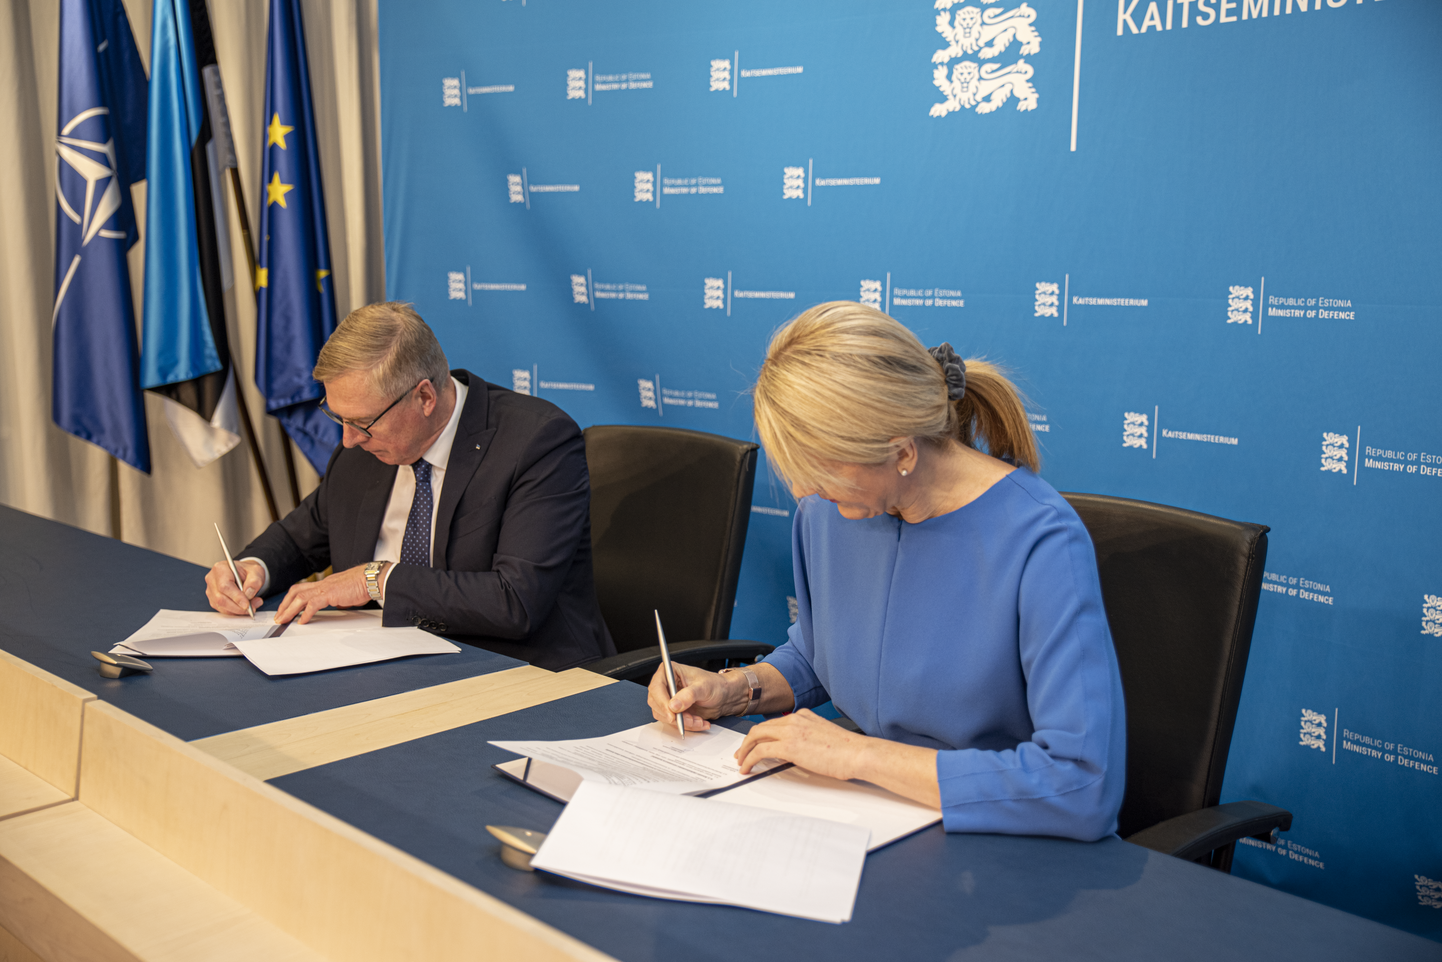 Kaitseminister Kalle Laanet ja välisminister Eva-Maria Liimets allkirjastasid koostöökokkuleppe, mille vajadus pani paljusid kahtlema.